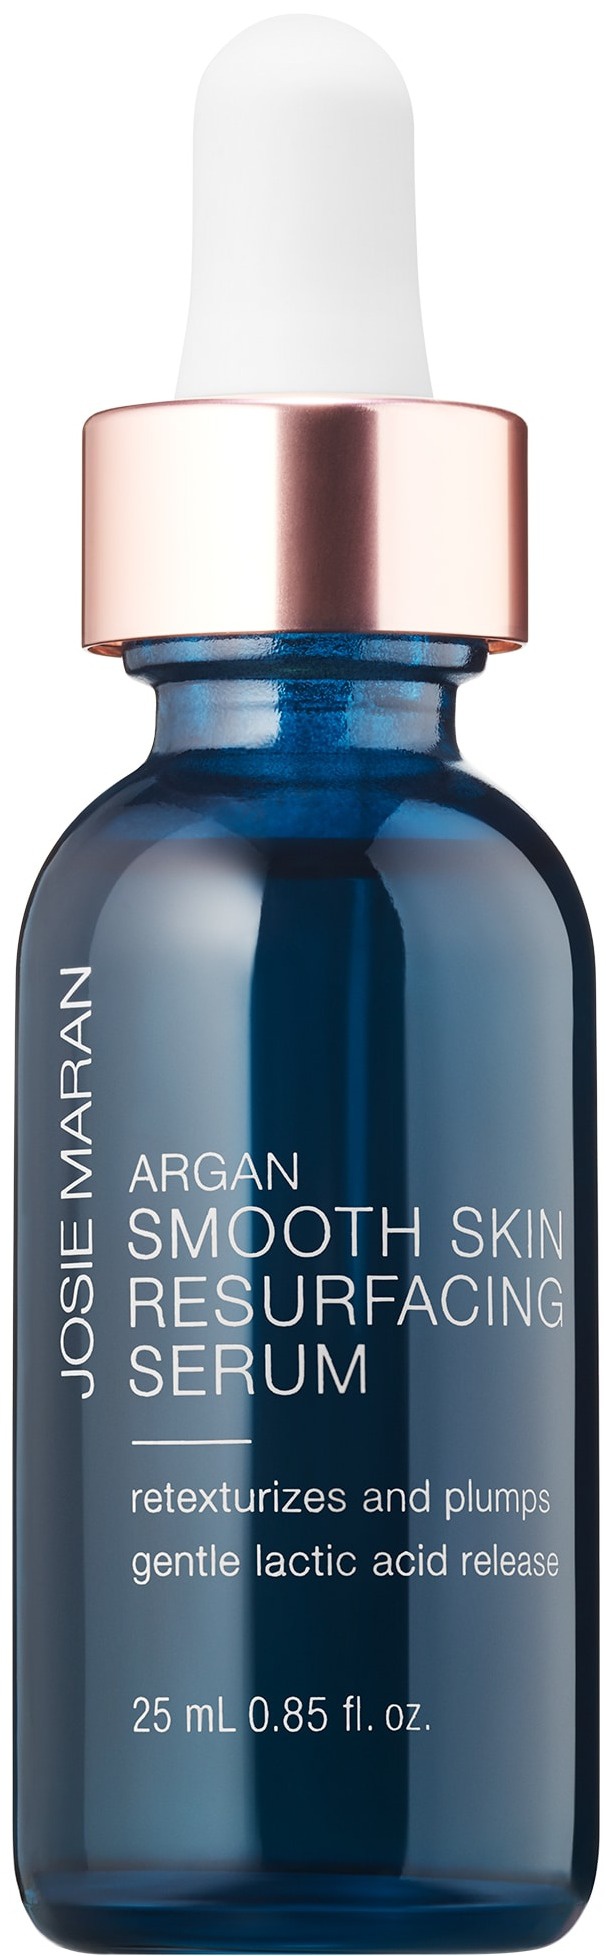 Josie Maran Argan Smooth Skin Resurfacing Serum